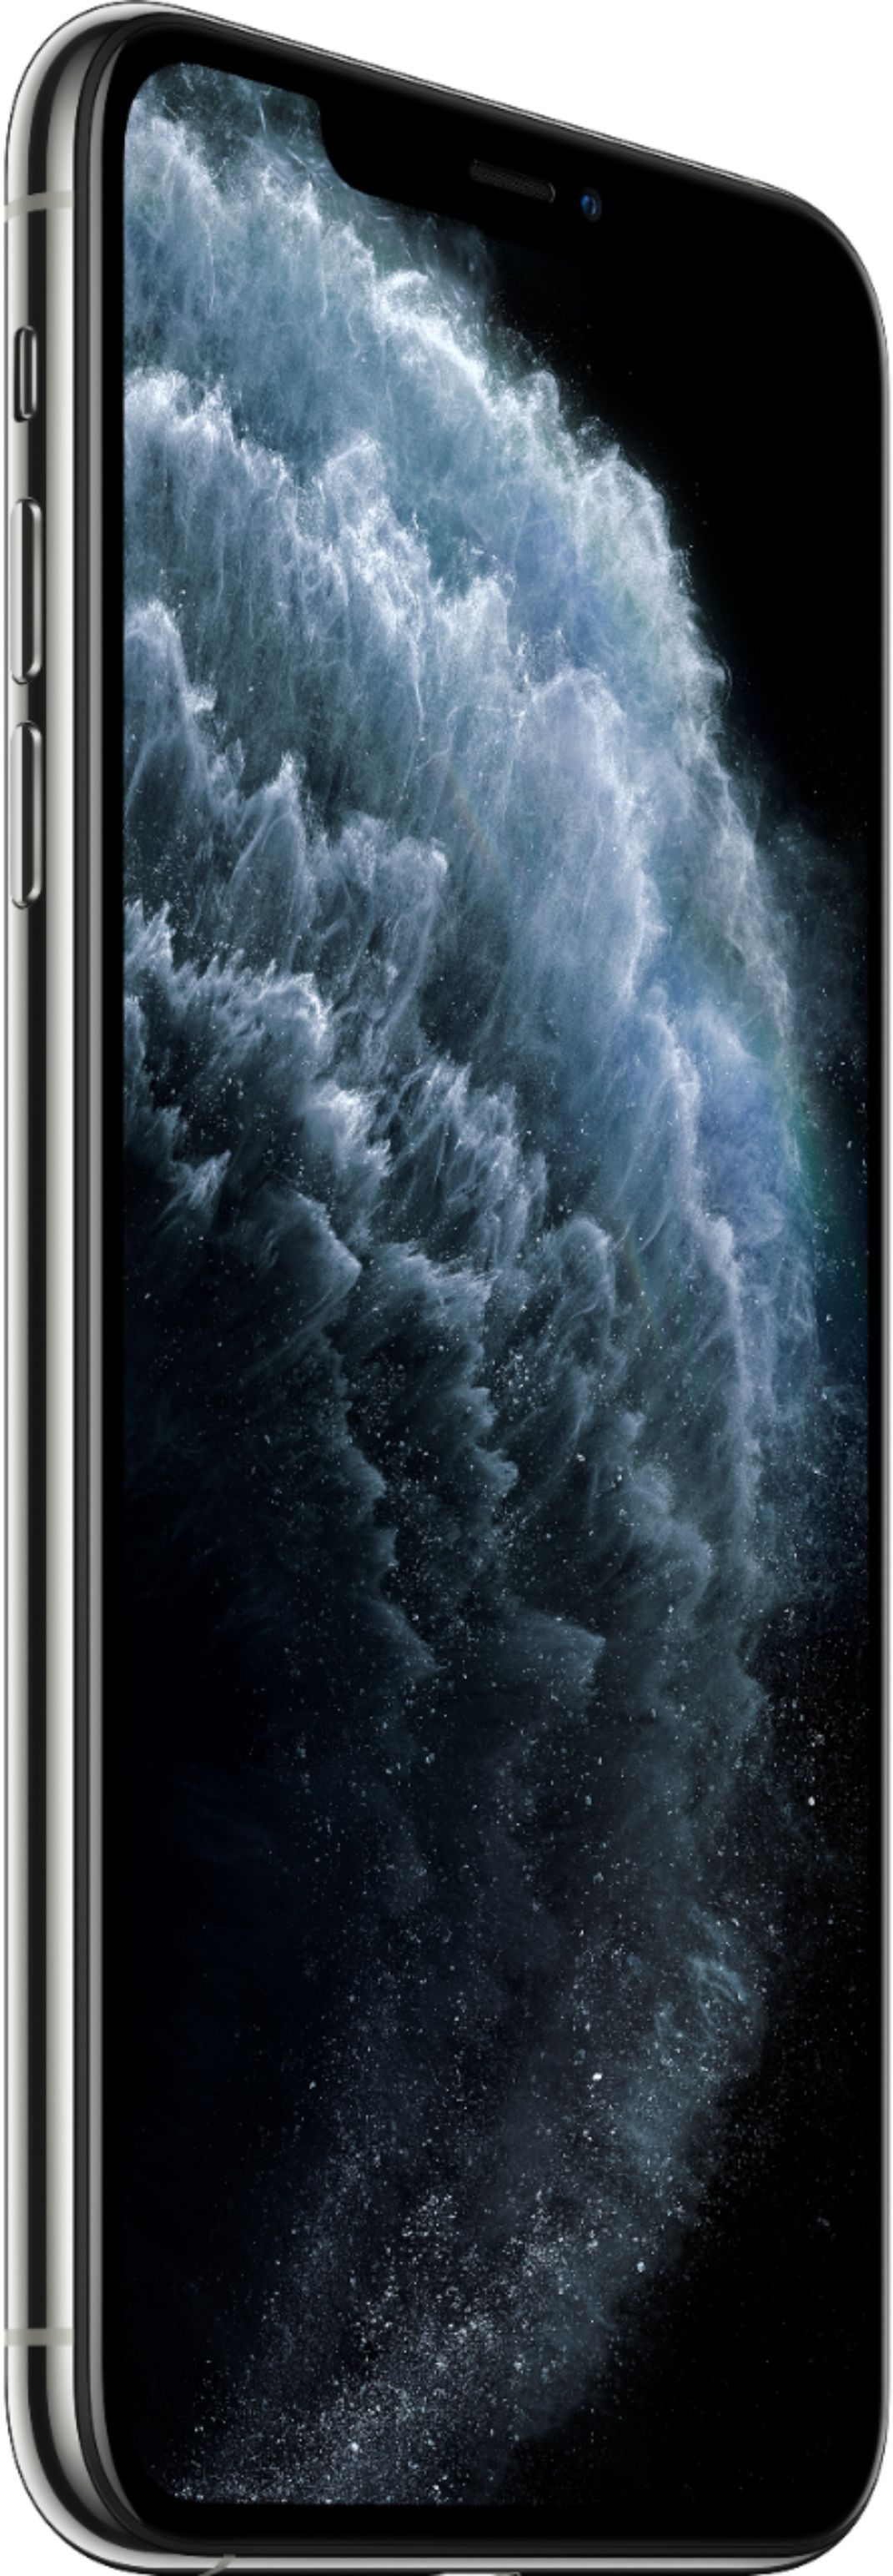 赤字特価セール iPhone GB 256 Max Pro 11 スマートフォン本体